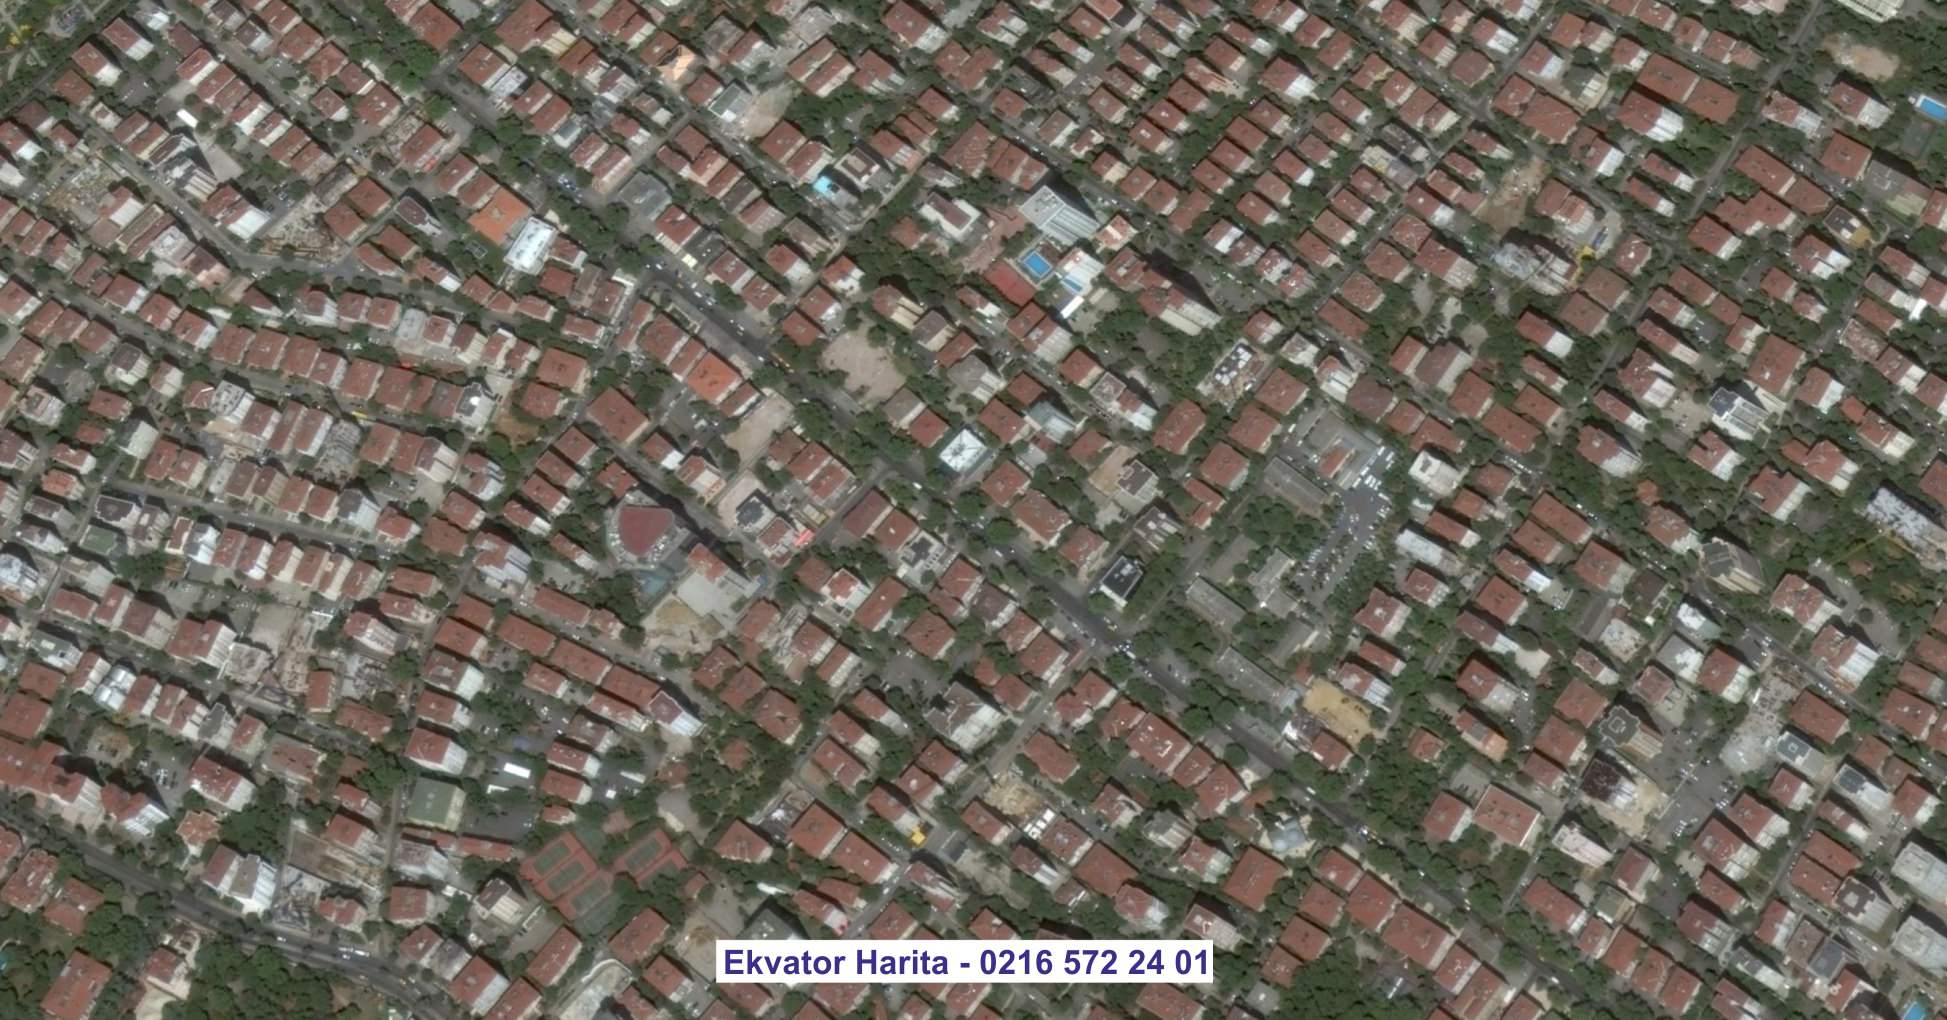 Bayburt Uydu Görüntüsü Örnek Fotoğrafı